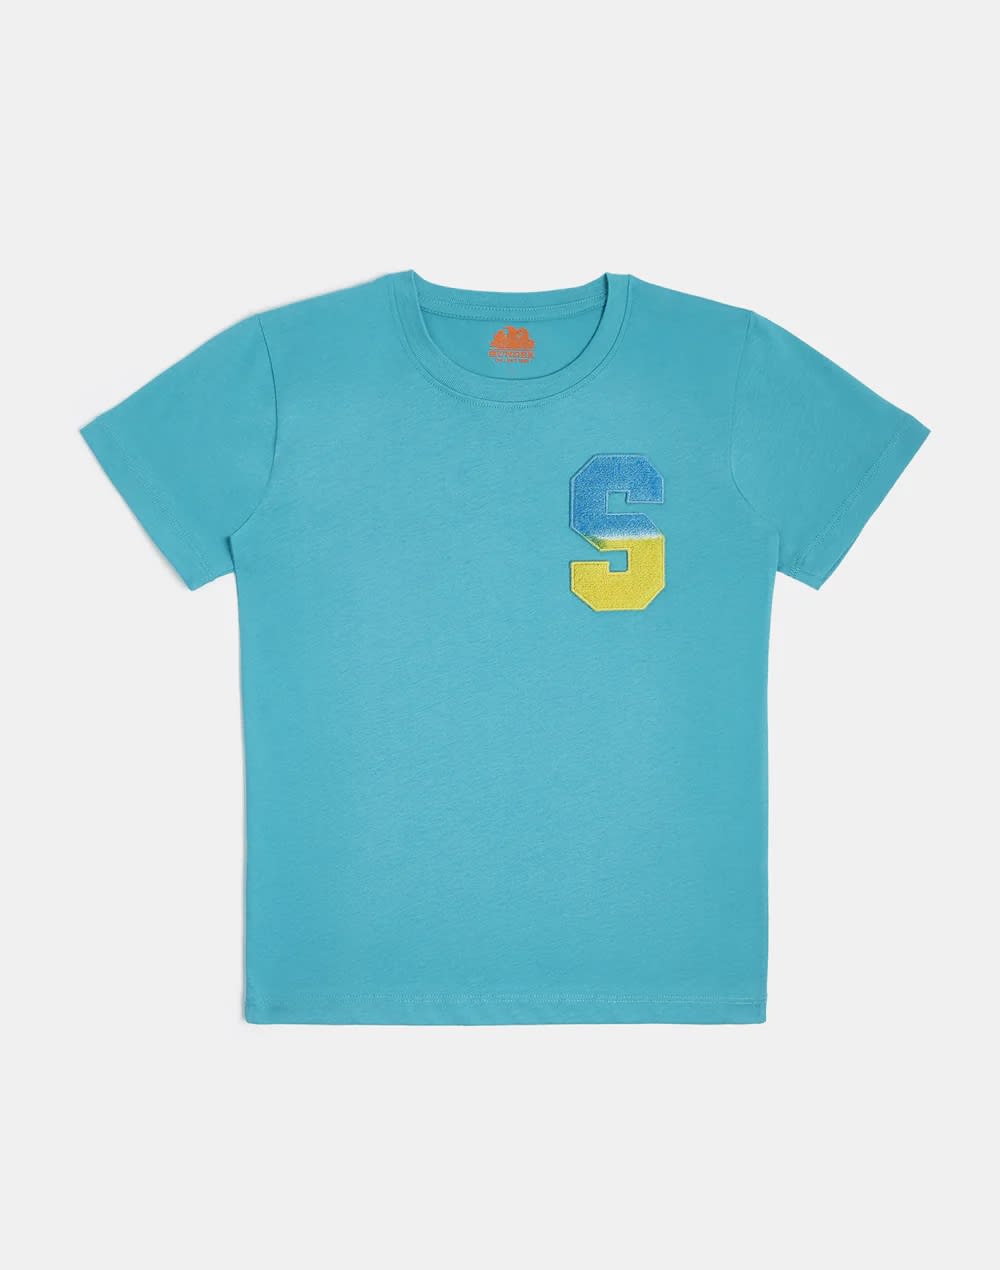 Sundek Kids' T-shirt With Application In Blue